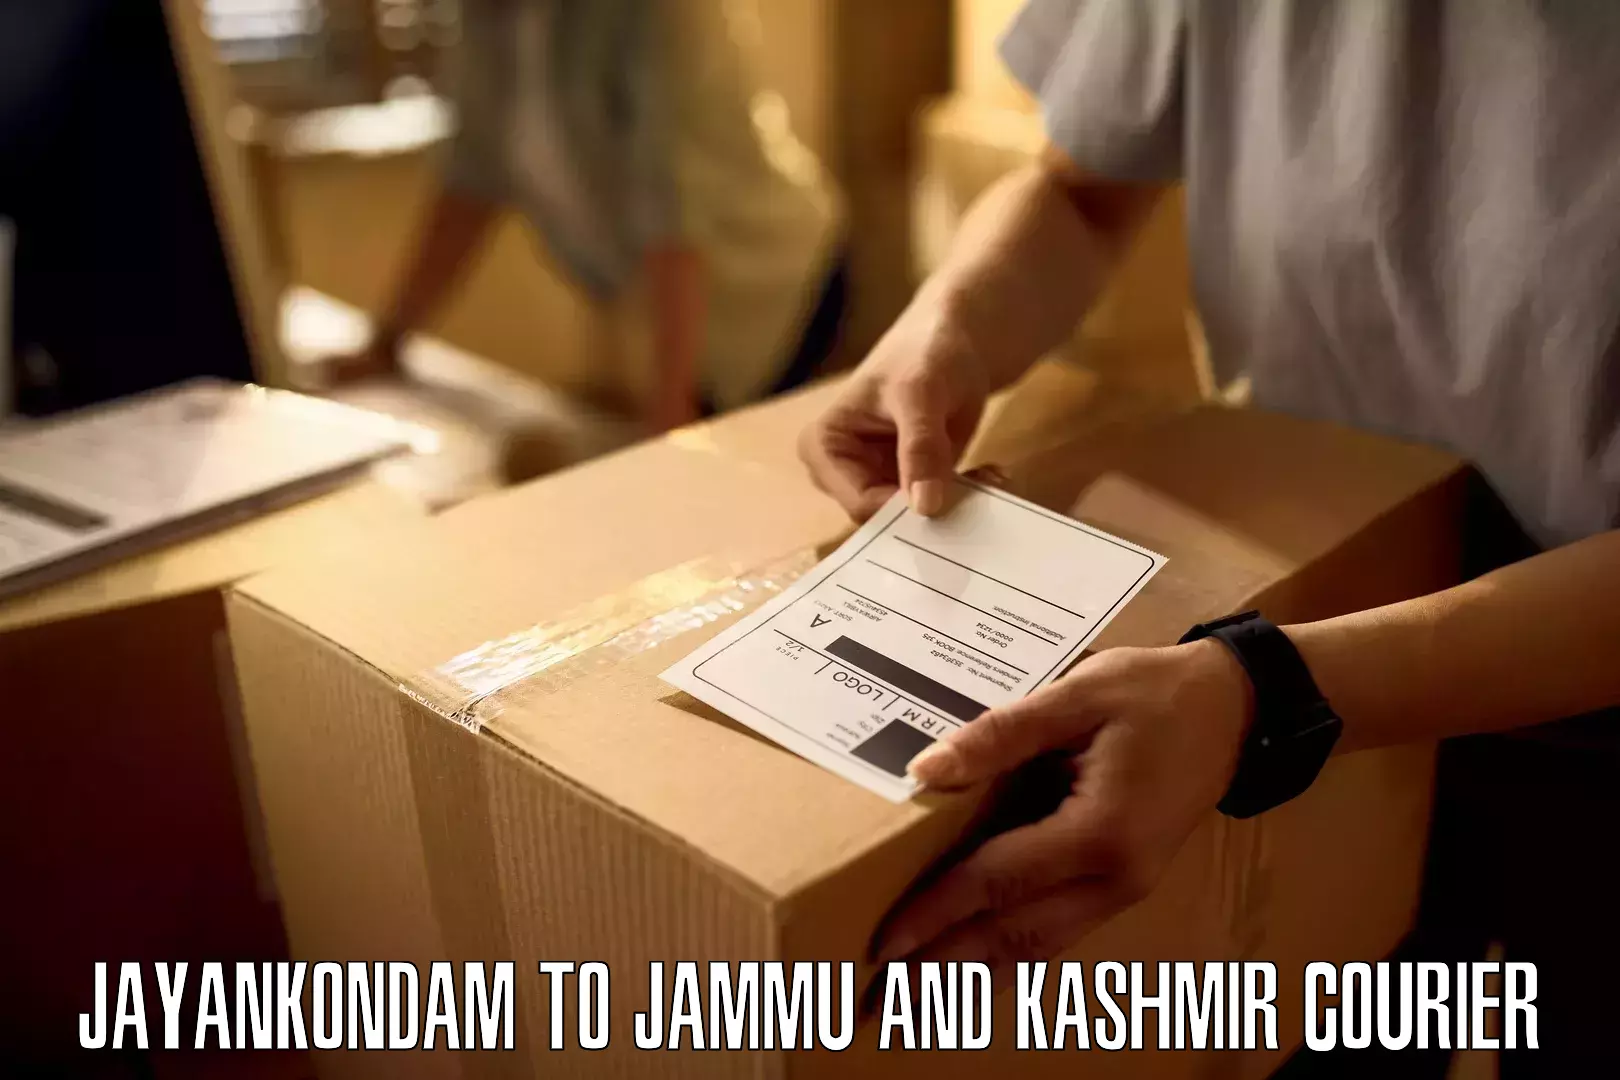 Bulk shipment Jayankondam to University of Jammu